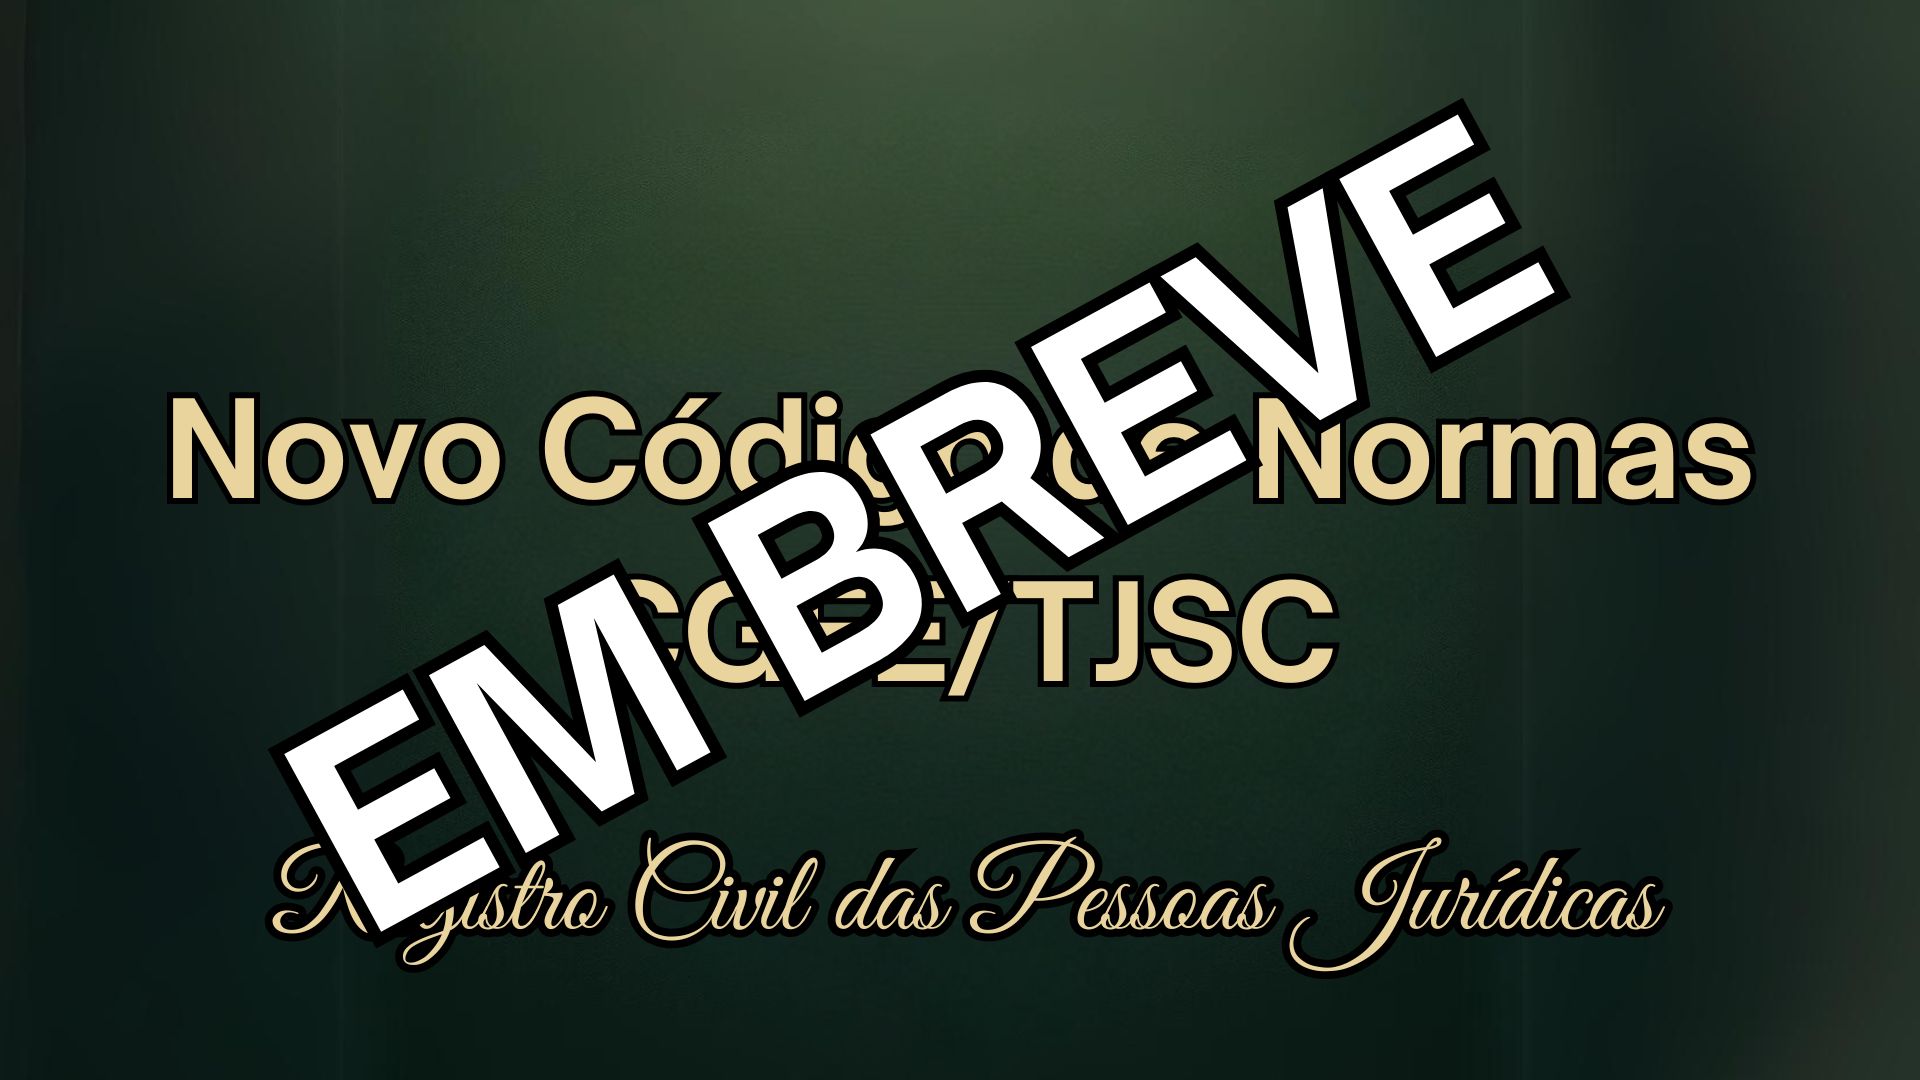 Novo Código de Normas CGFE/TJSC – Registro Civil das Pessoas Jurídicas